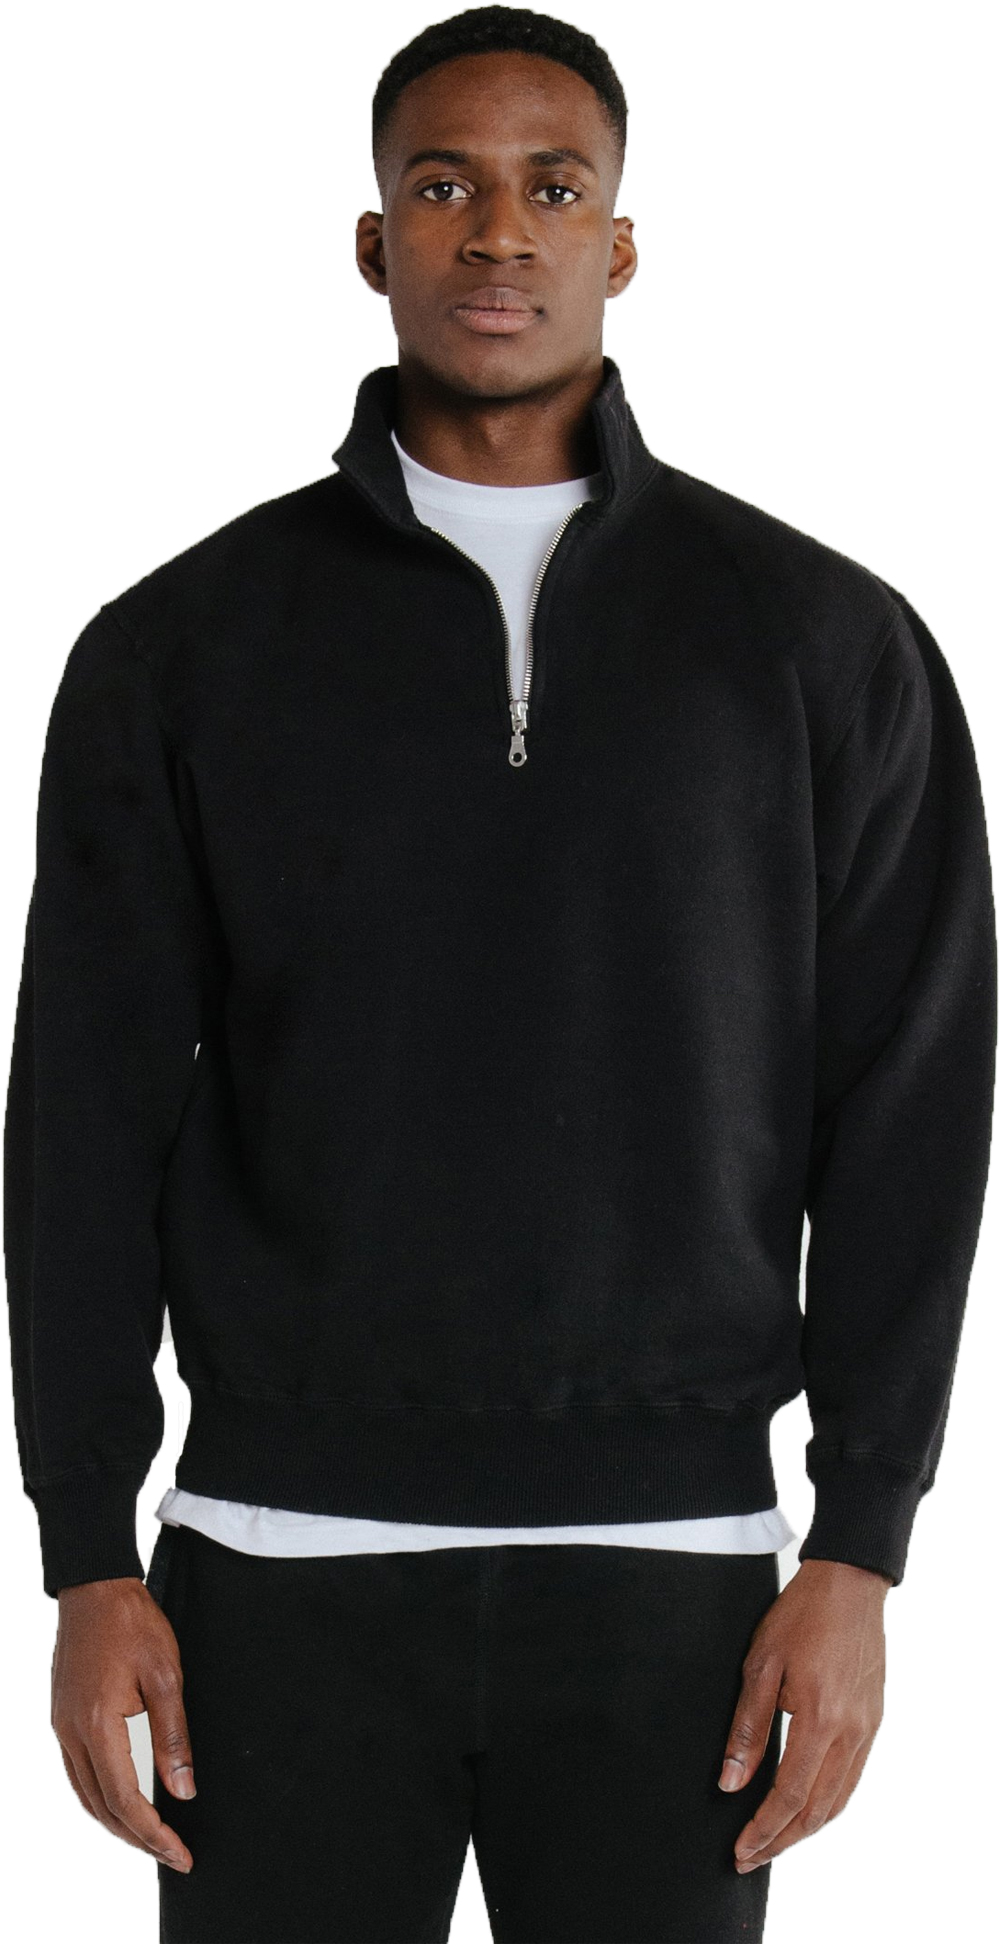 Buy Zip Neck Black 100% Cotton Online | Just Sweatshirts